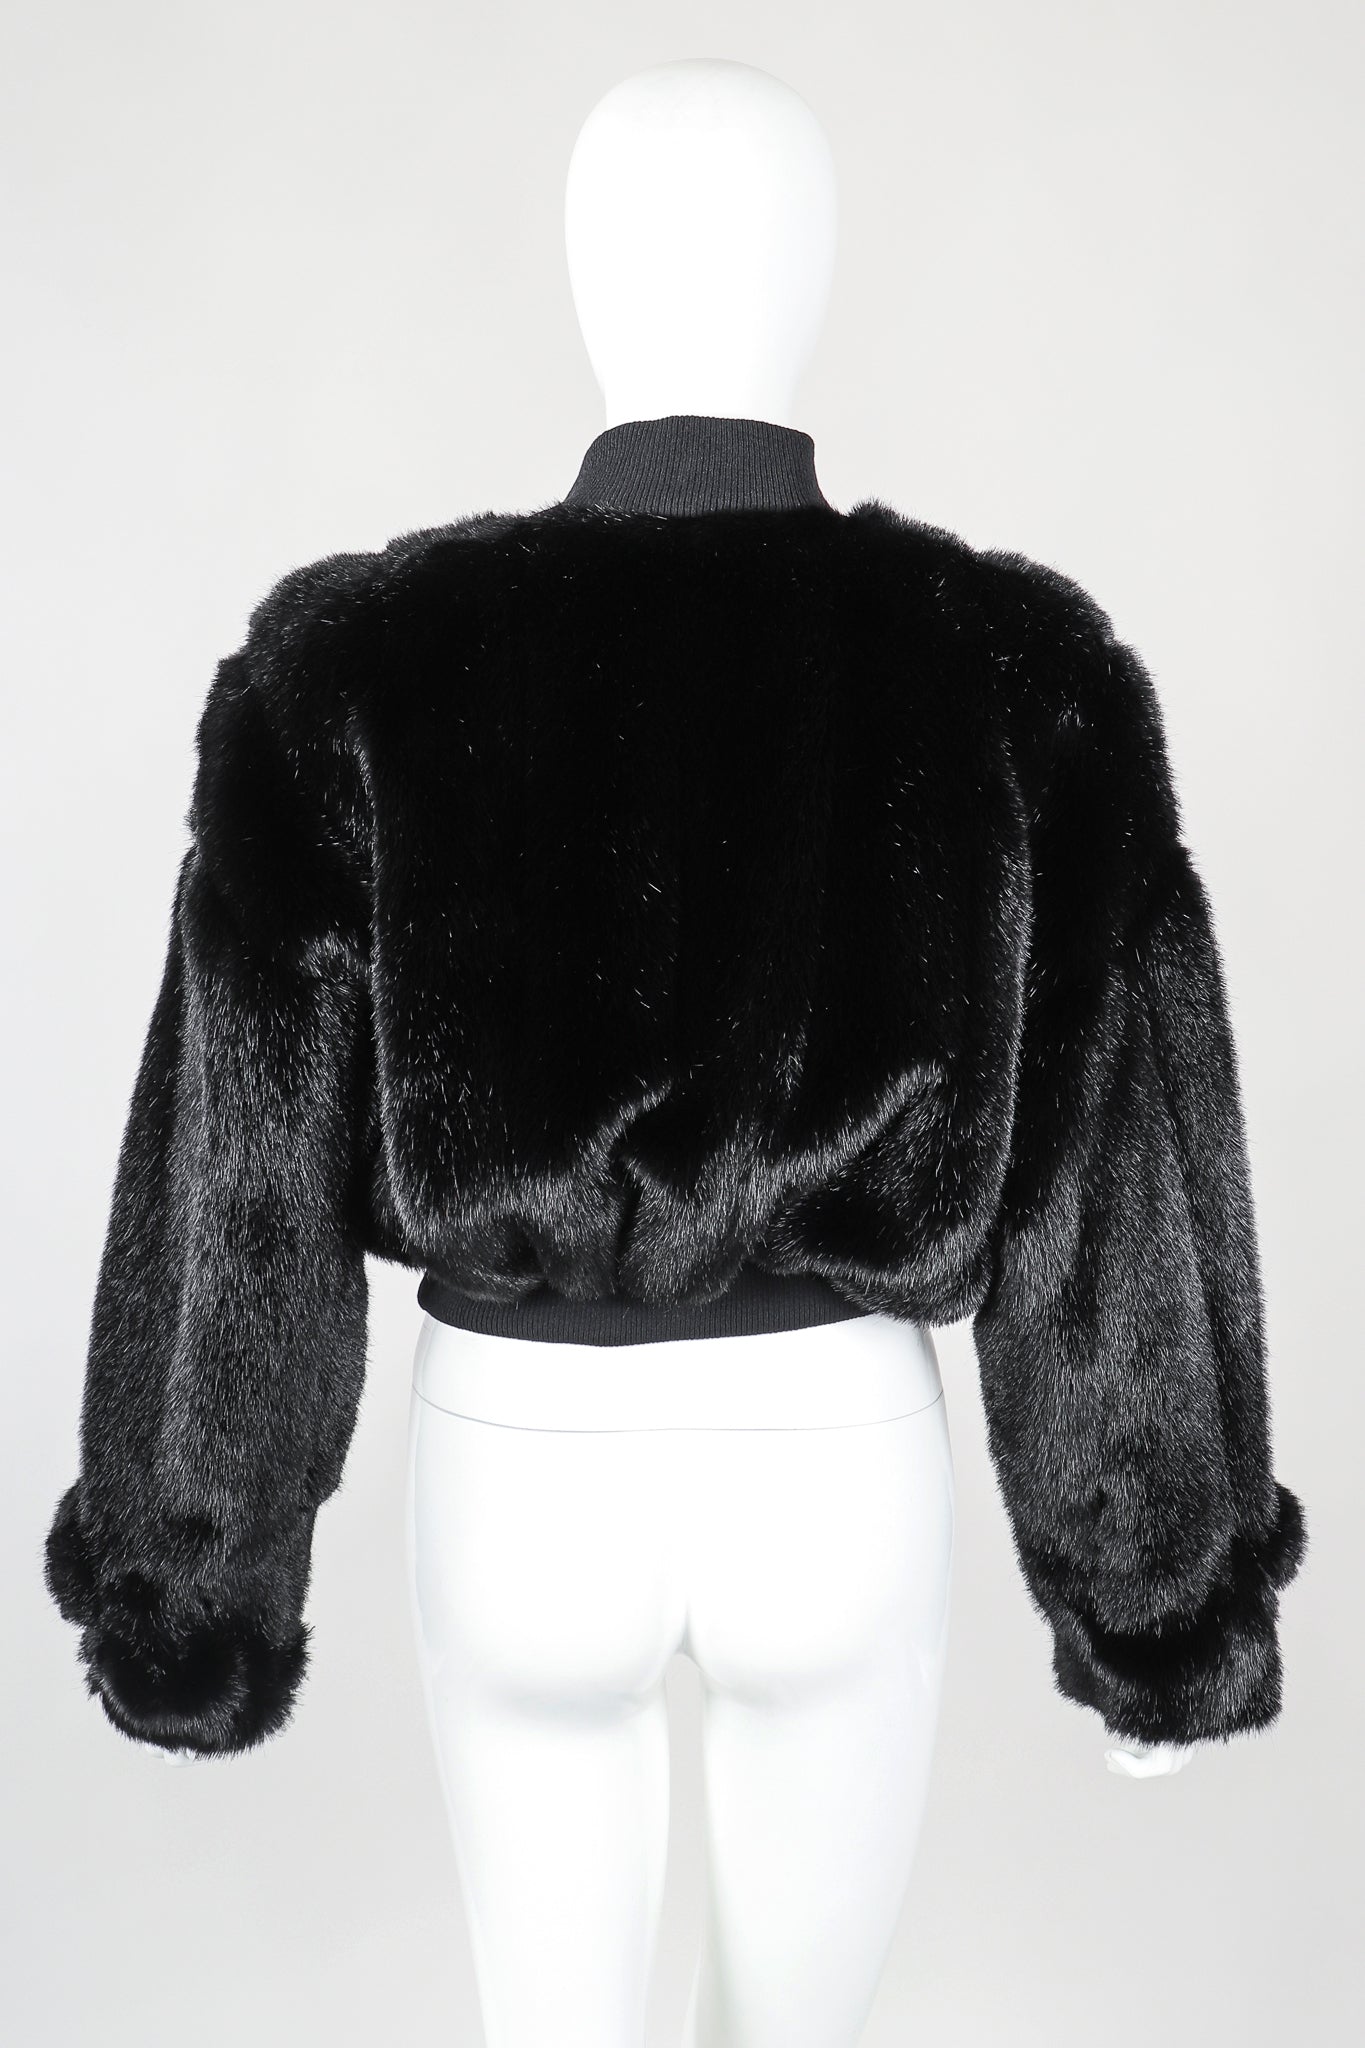 Recess Vintage St. John cropped black faux fur bomber jacket on mannnequin, Back